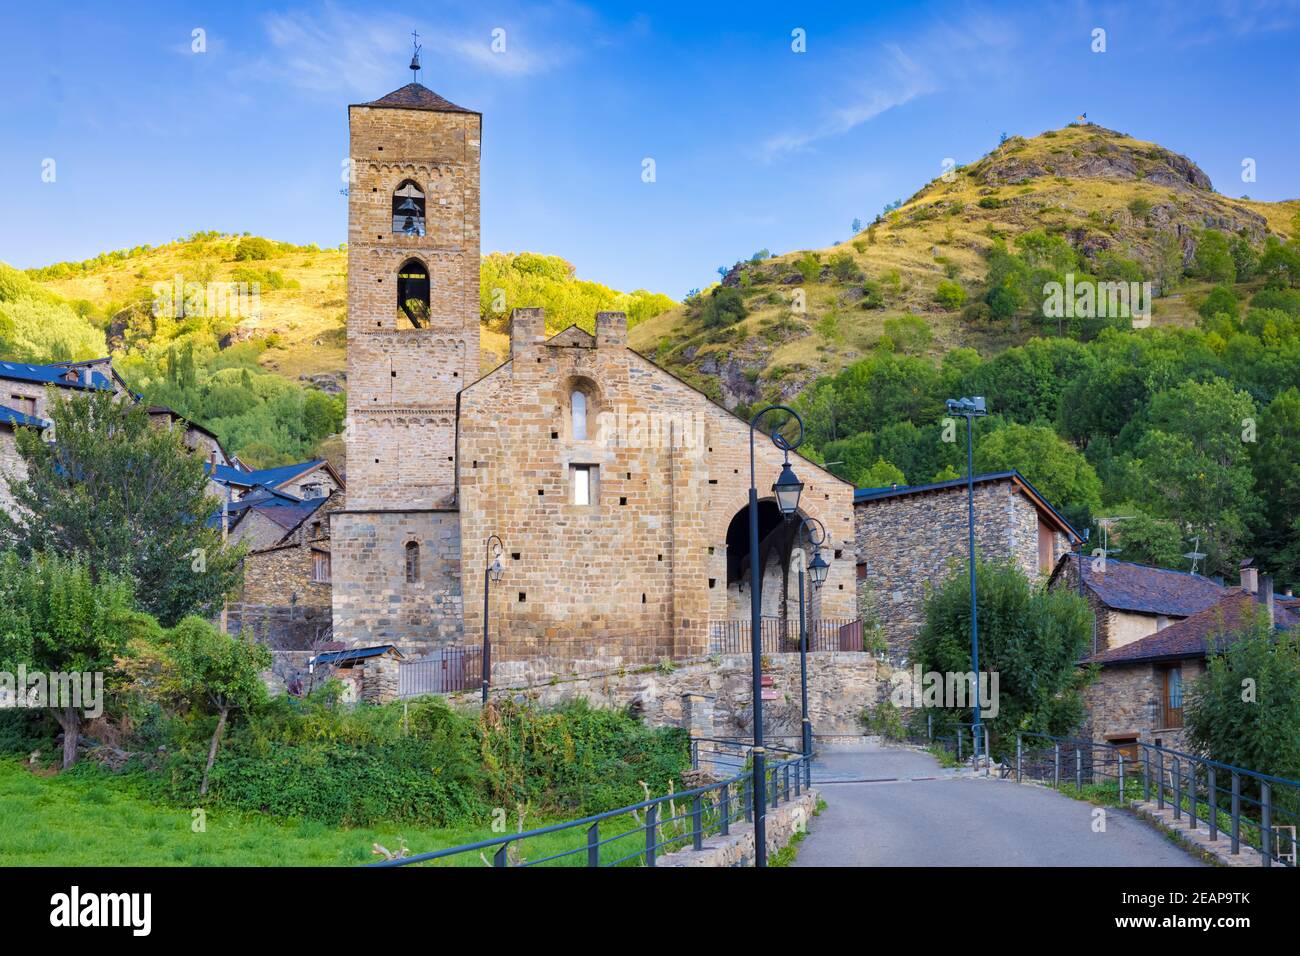 Vue sur la façade principale de l'église romane de la Nativité de Durro, site classé au patrimoine de l'UNESCO, vallée de Boi, Catalogne, Espagne Banque D'Images